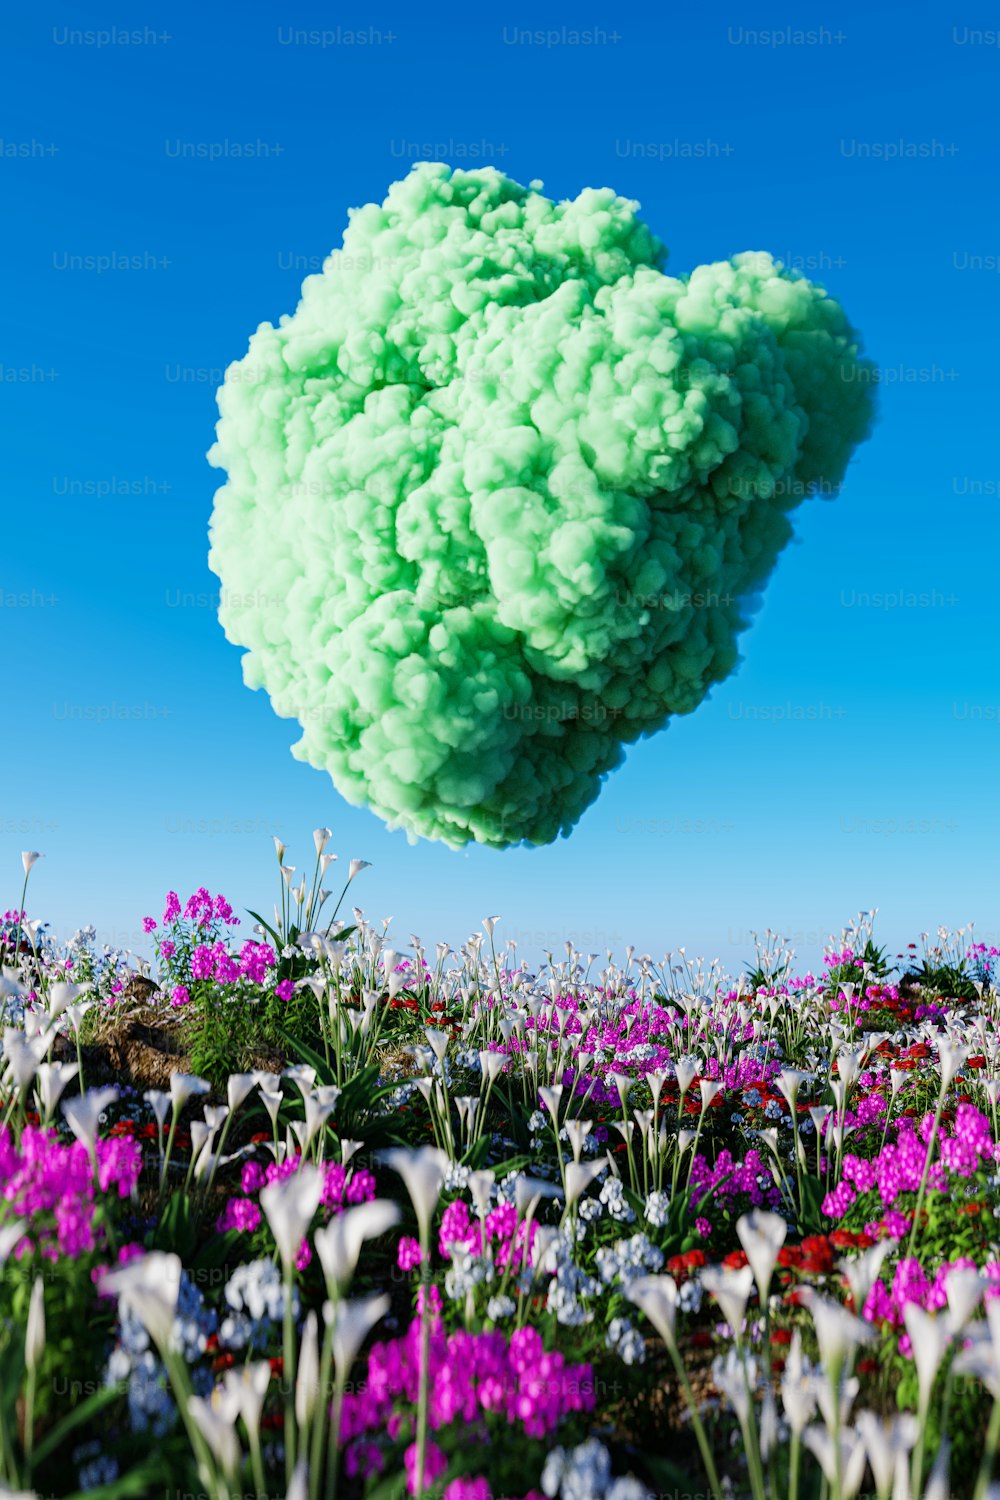 Una nube de flores verdes y púrpuras flotando en el aire